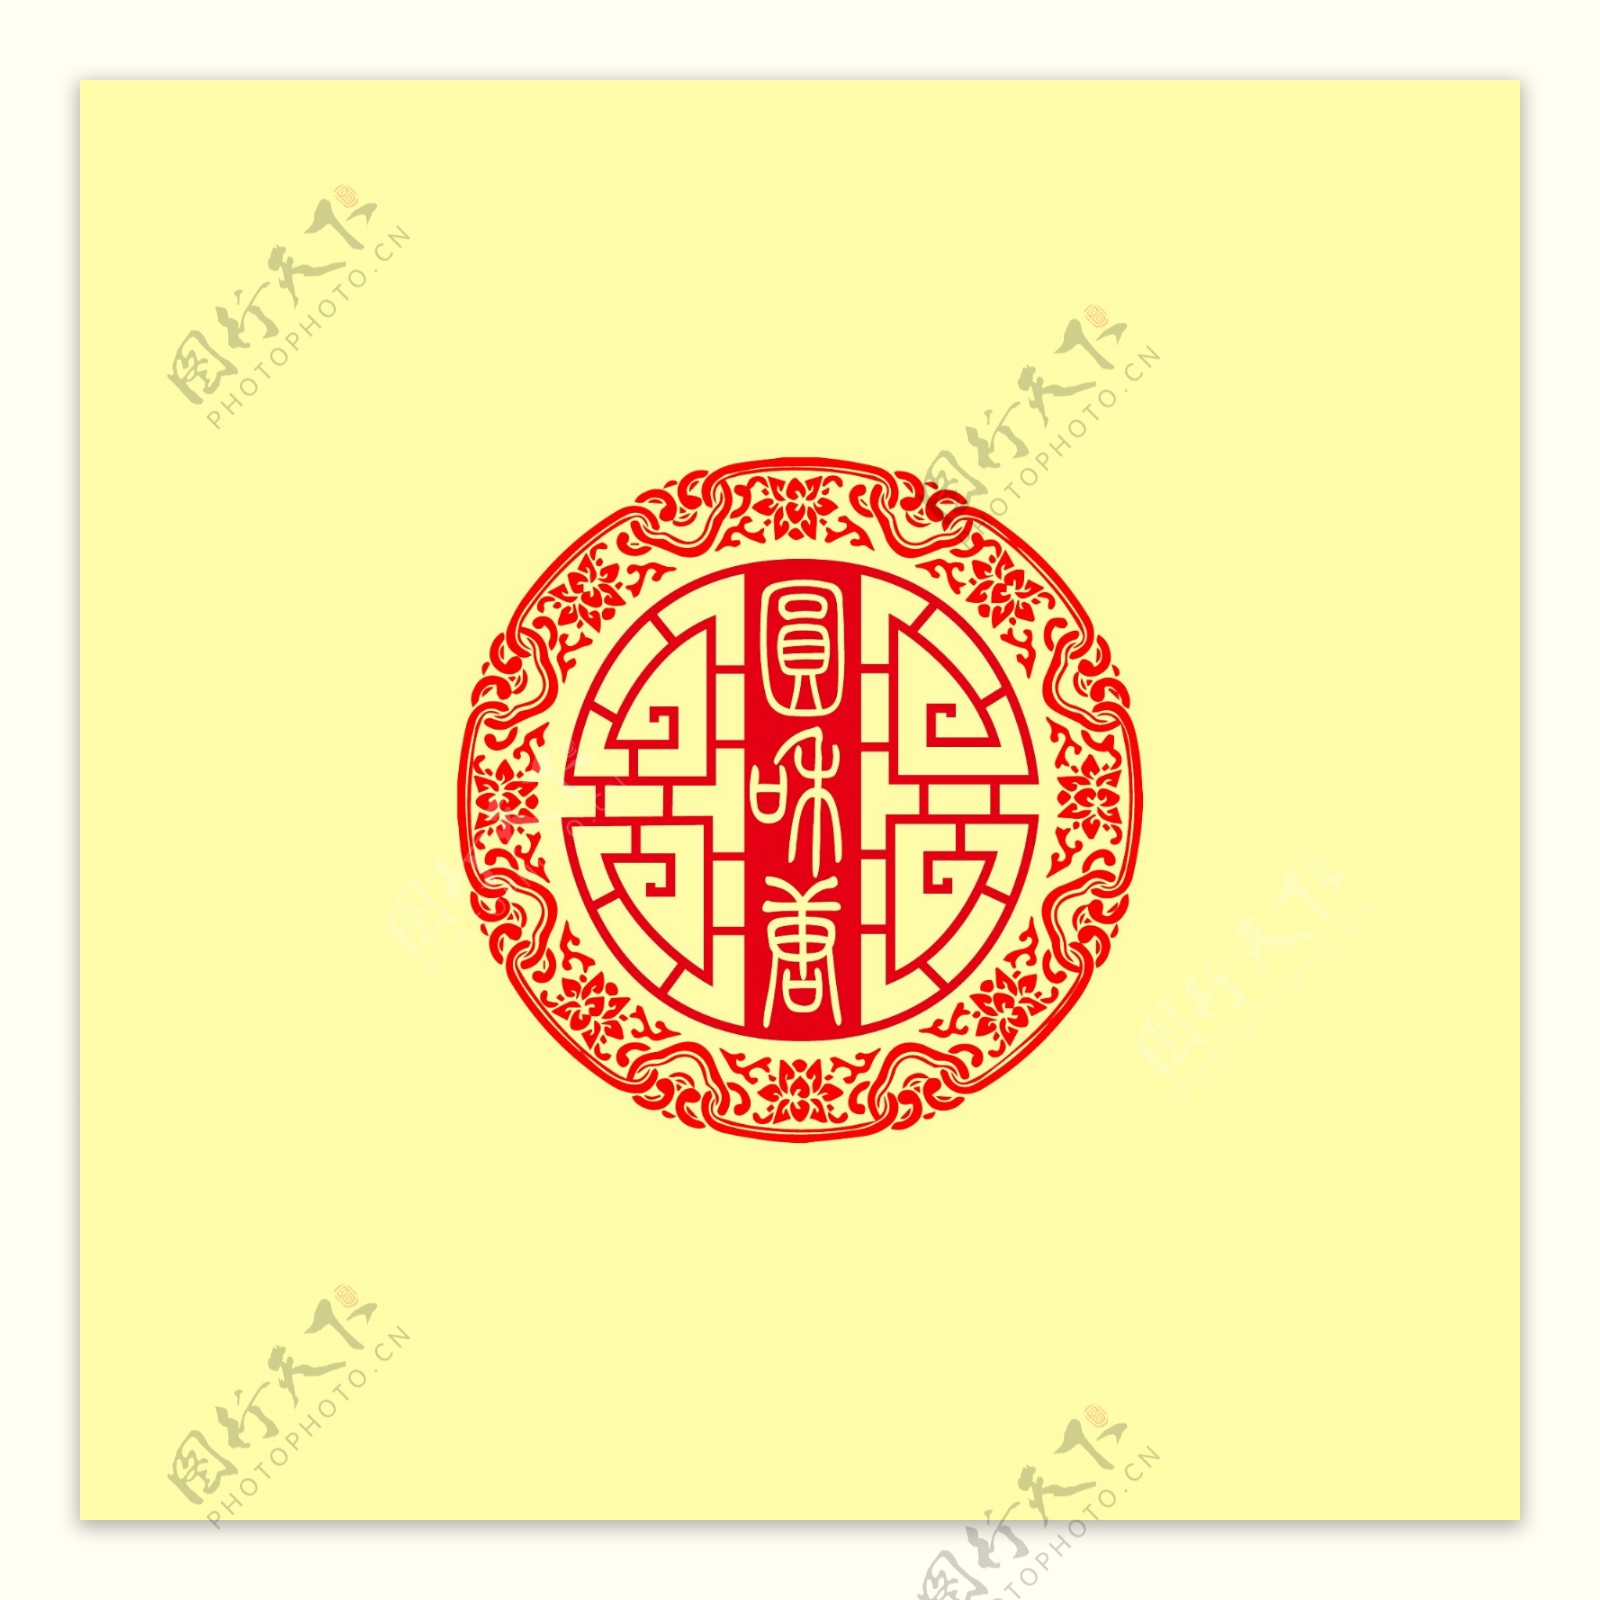 原创中国风养生logo设计